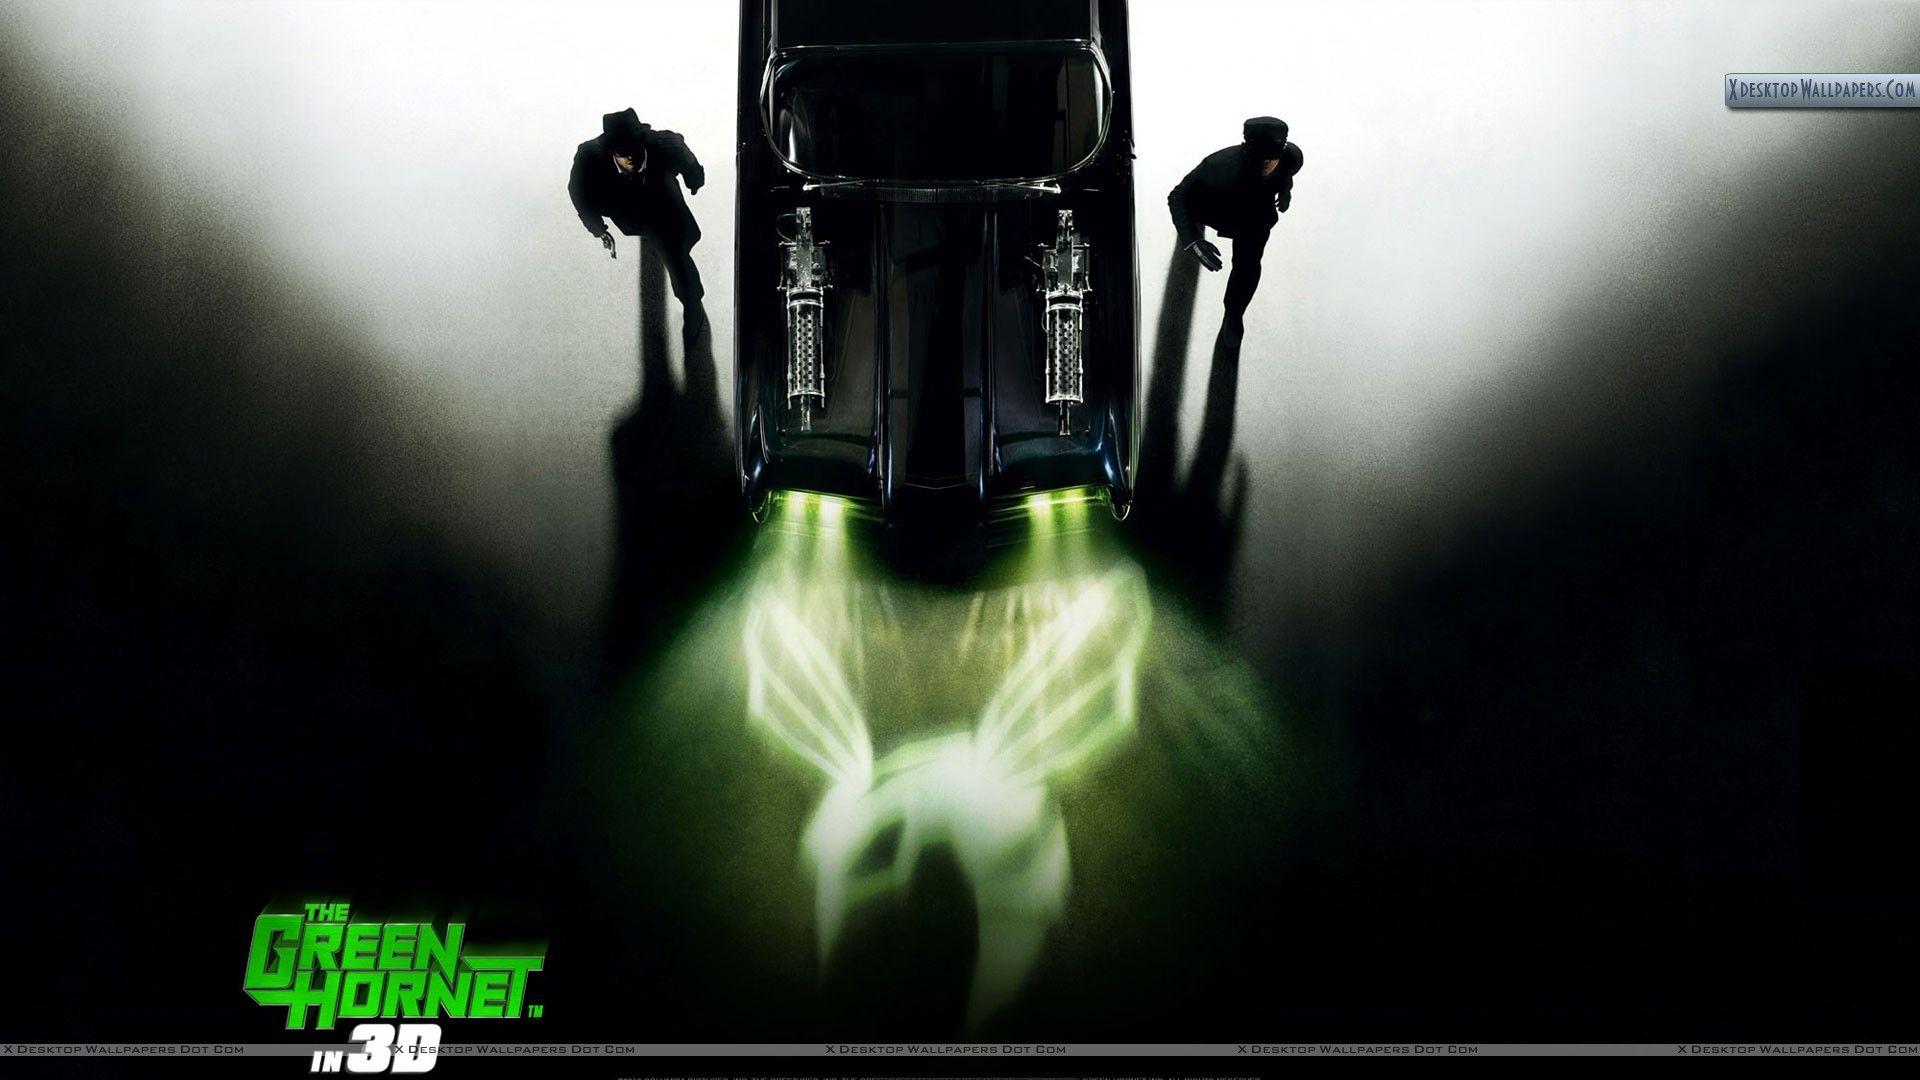 The Green Hornet Movie Cover Poster Wallpaper